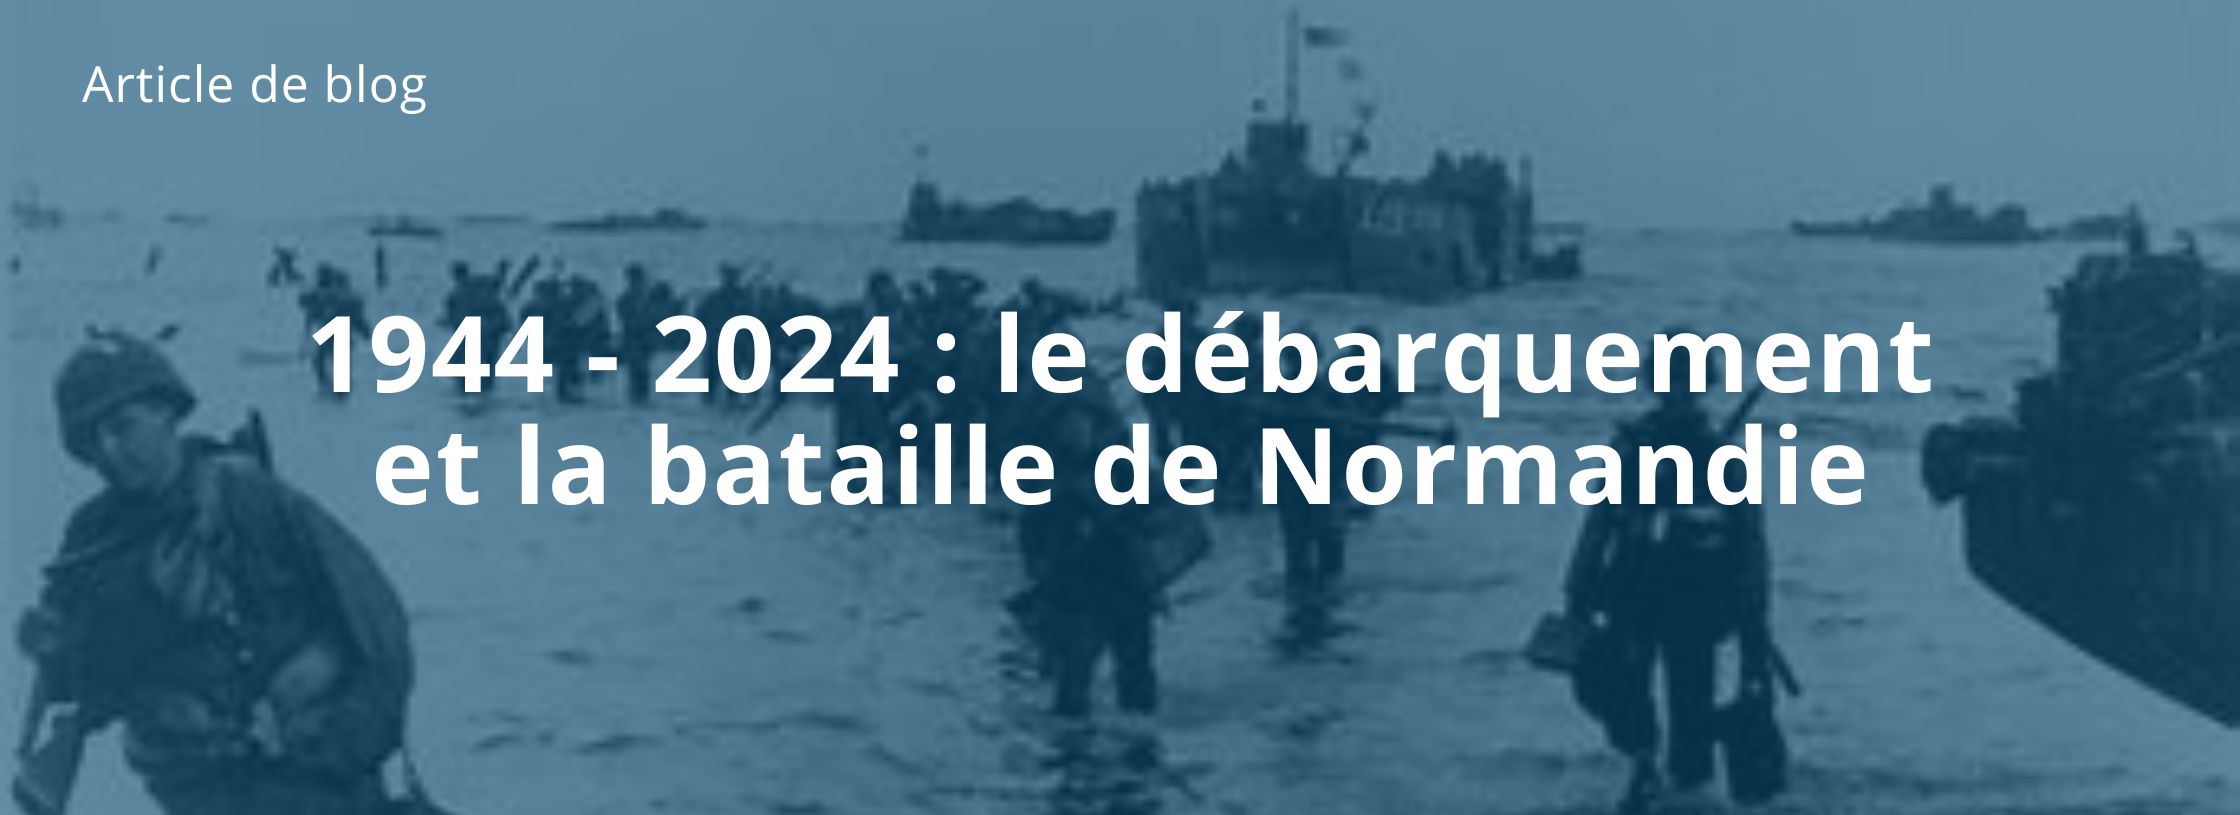 1944 - 2024 : Le débarquement et la bataille de Normandie le débarquement de normandie céréomine 80ieme anniversaire normandie débarquement librairie ardeche occasion